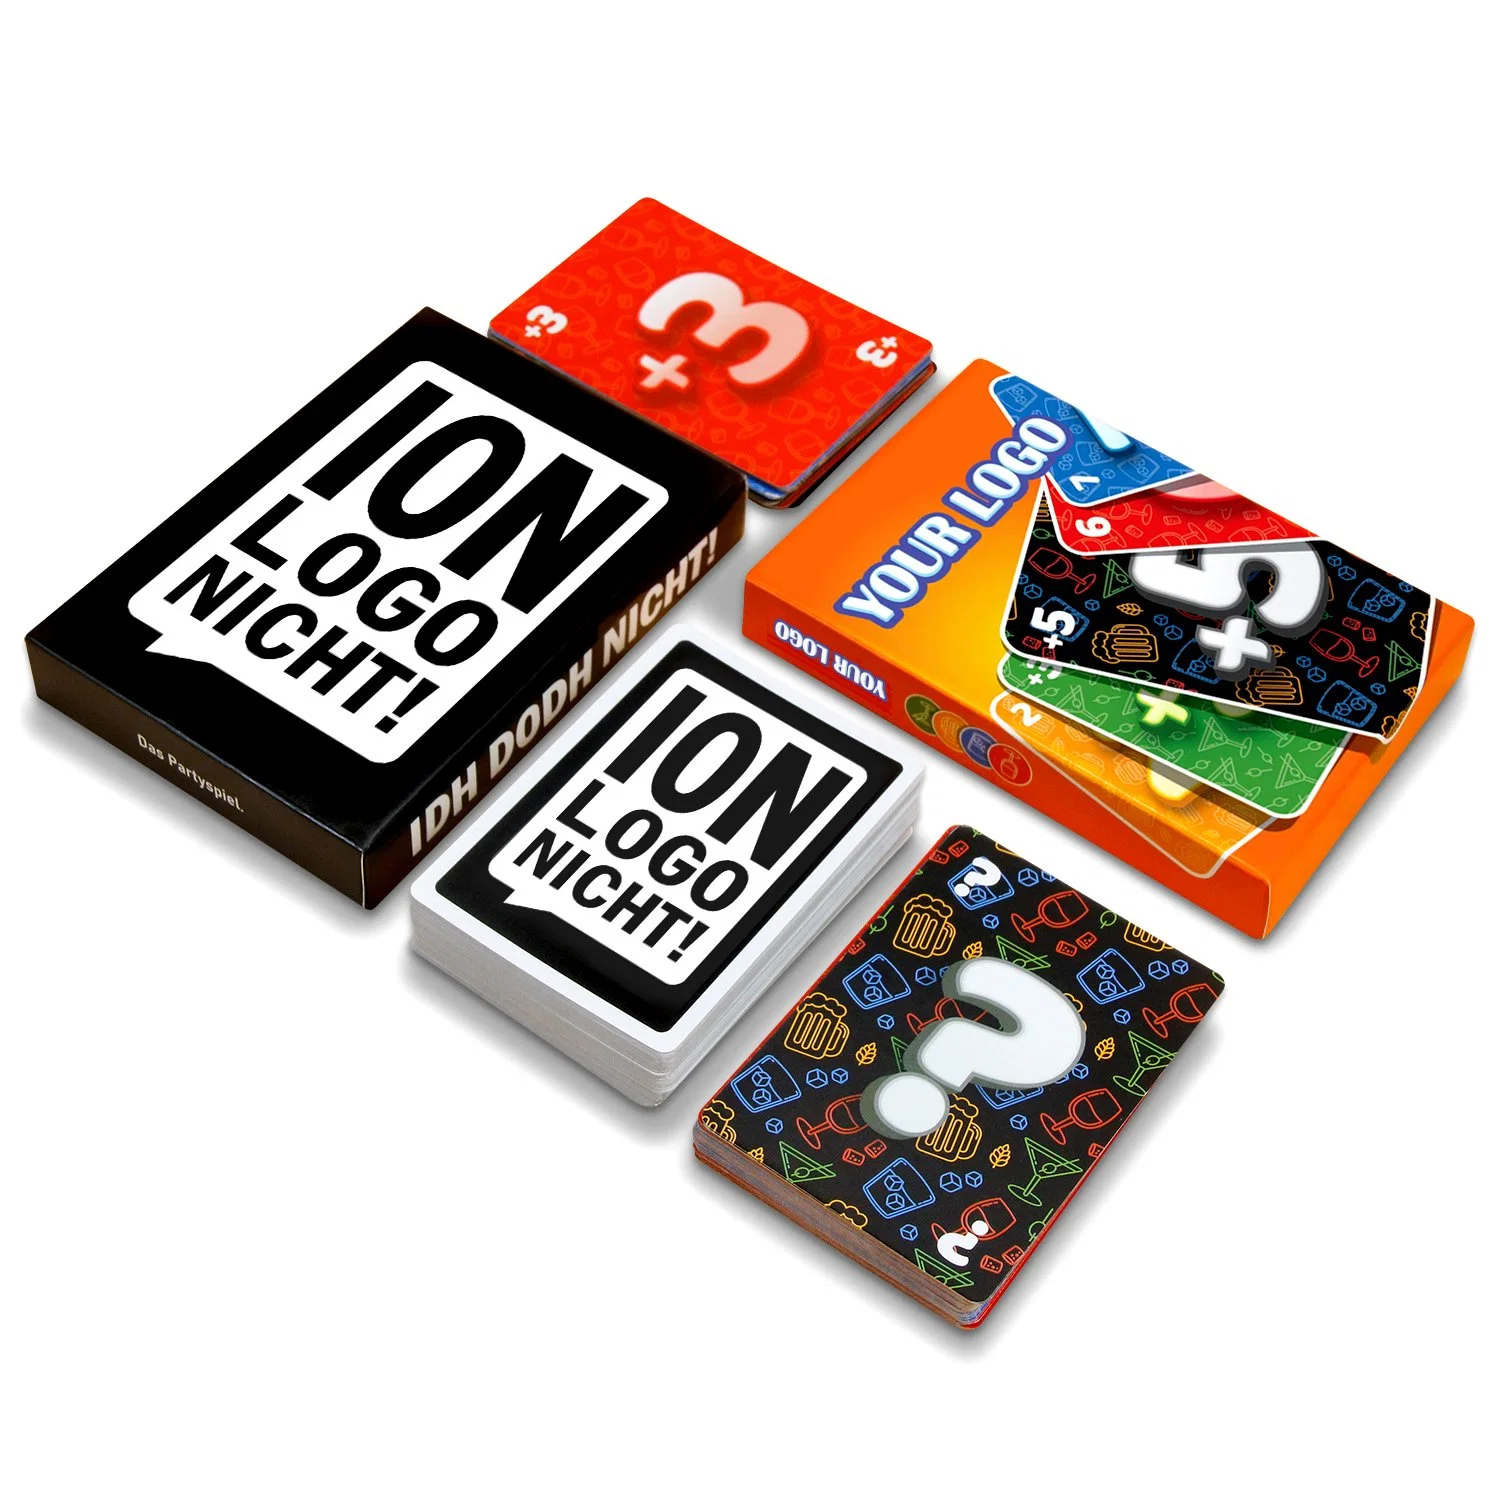 Adultos Niños Juego de tarjeta de diseño de lujo personalizado en el interior de papel juego de mesa jugar juegos de juego de tarjeta de memoria